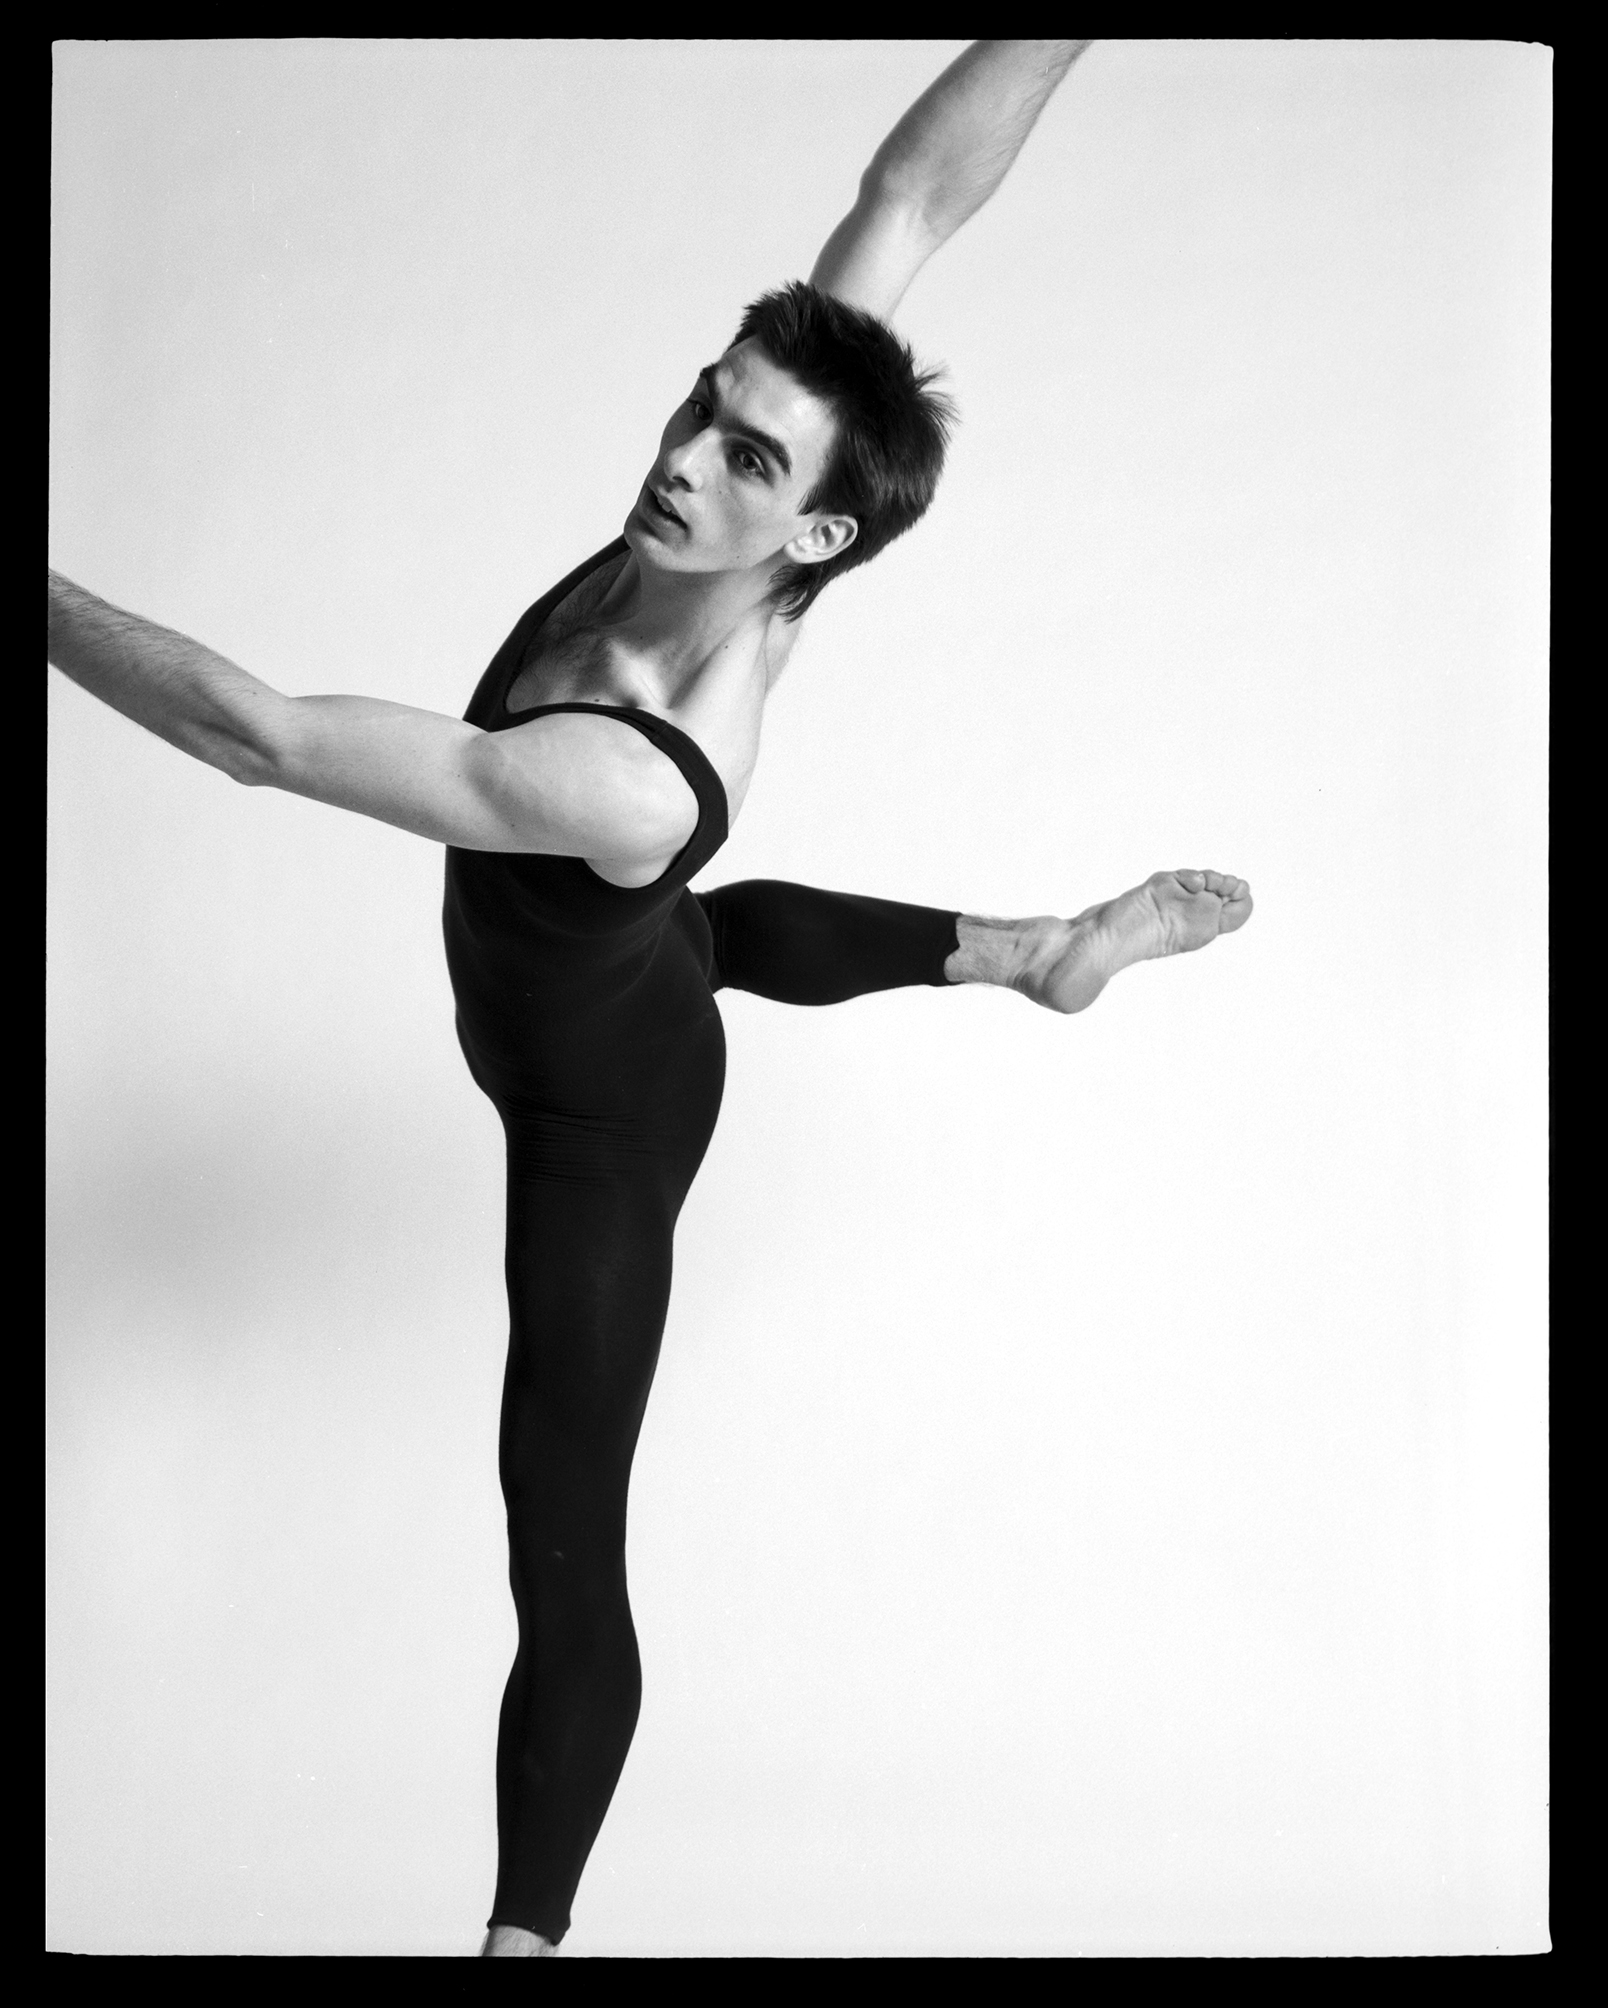 Sylvain LaFortune, Dancer, Studio, NYC, n.d.